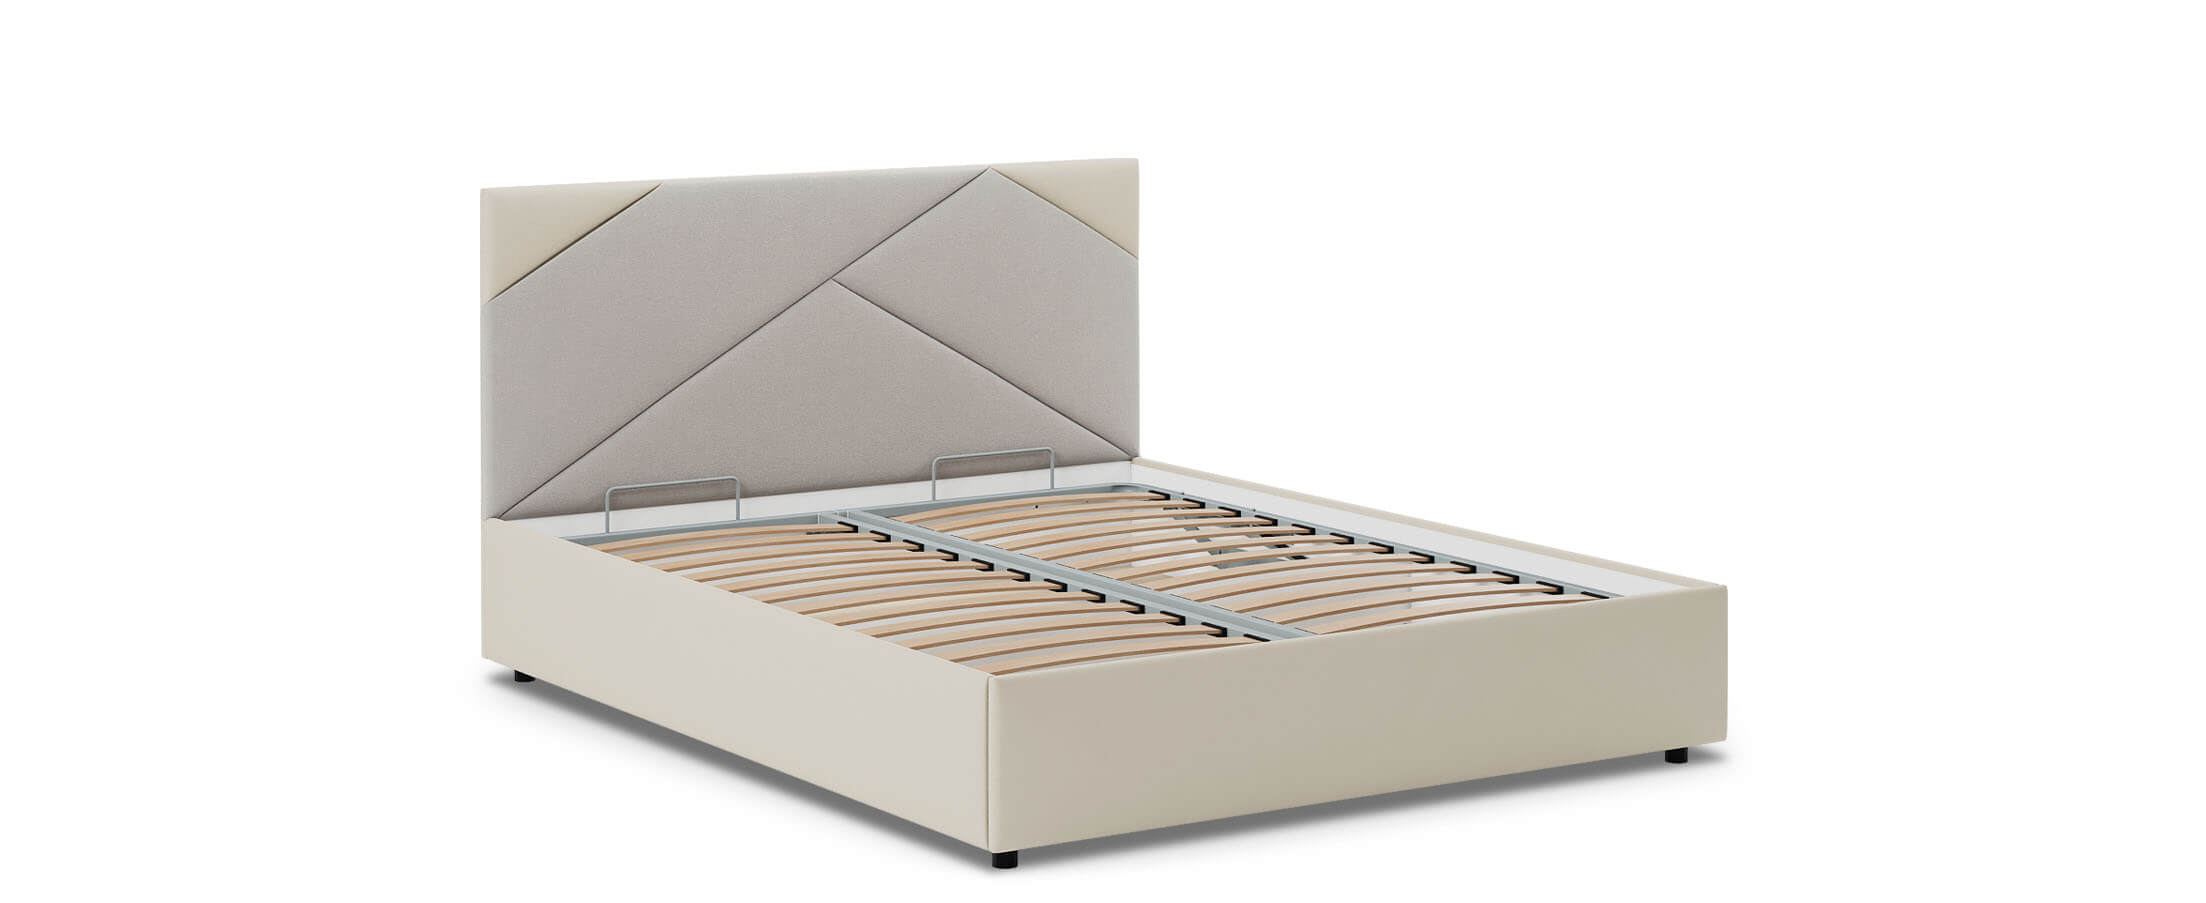 Кровать двуспальная Альба 160х200 модель 1206